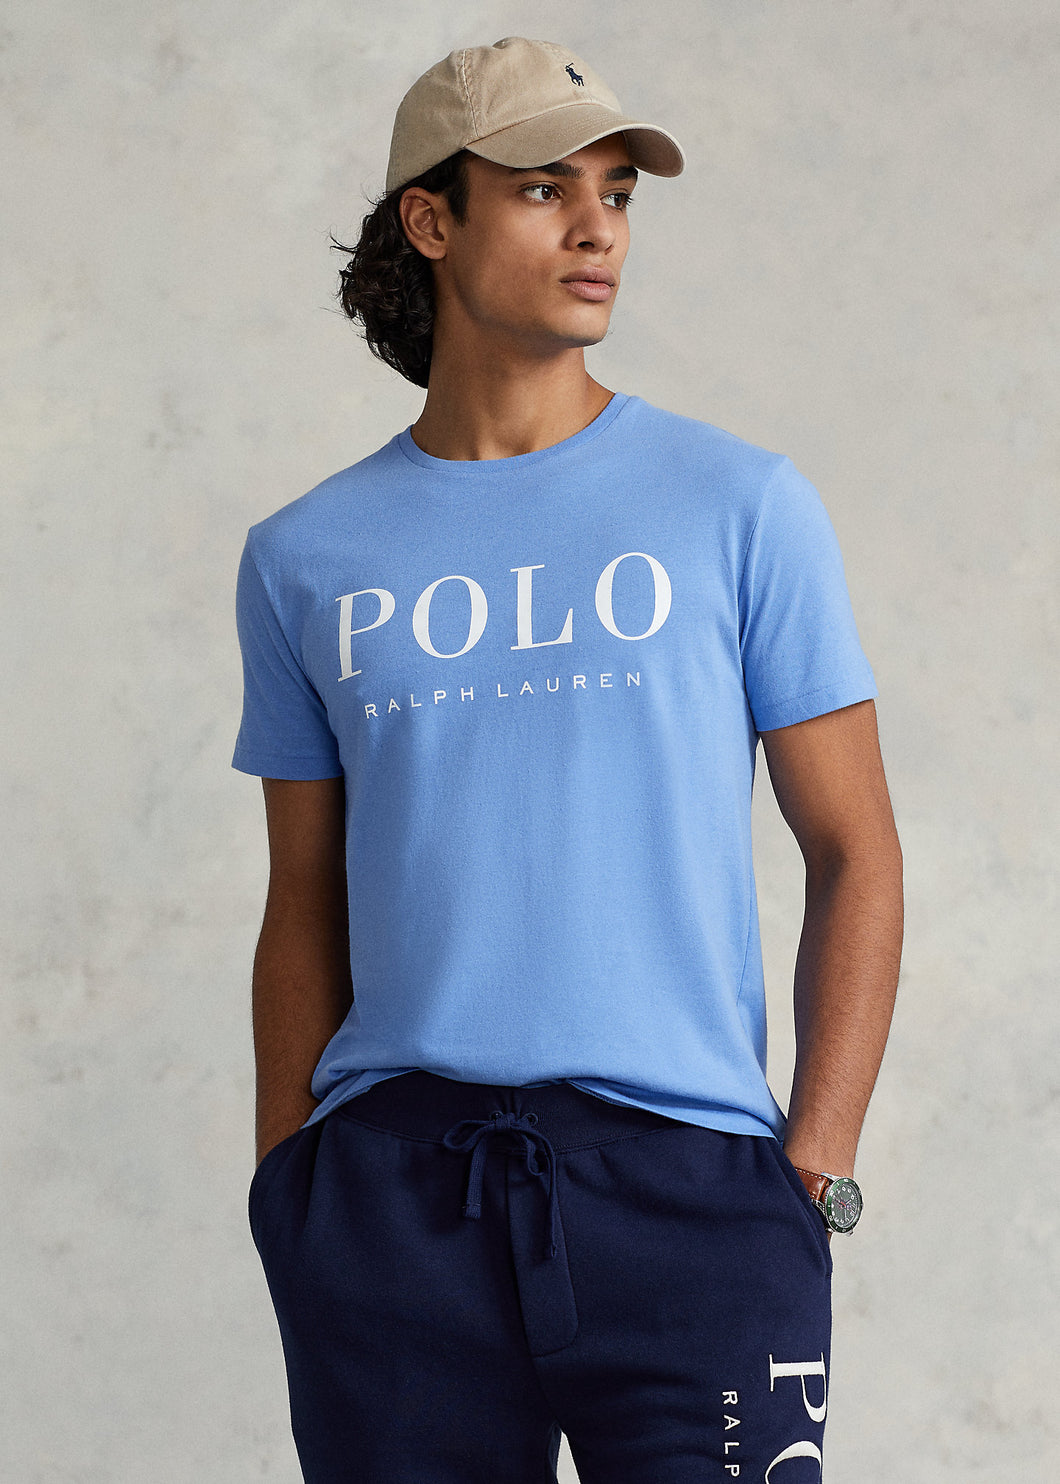 Polo Ralph Lauren - Store In Perú 